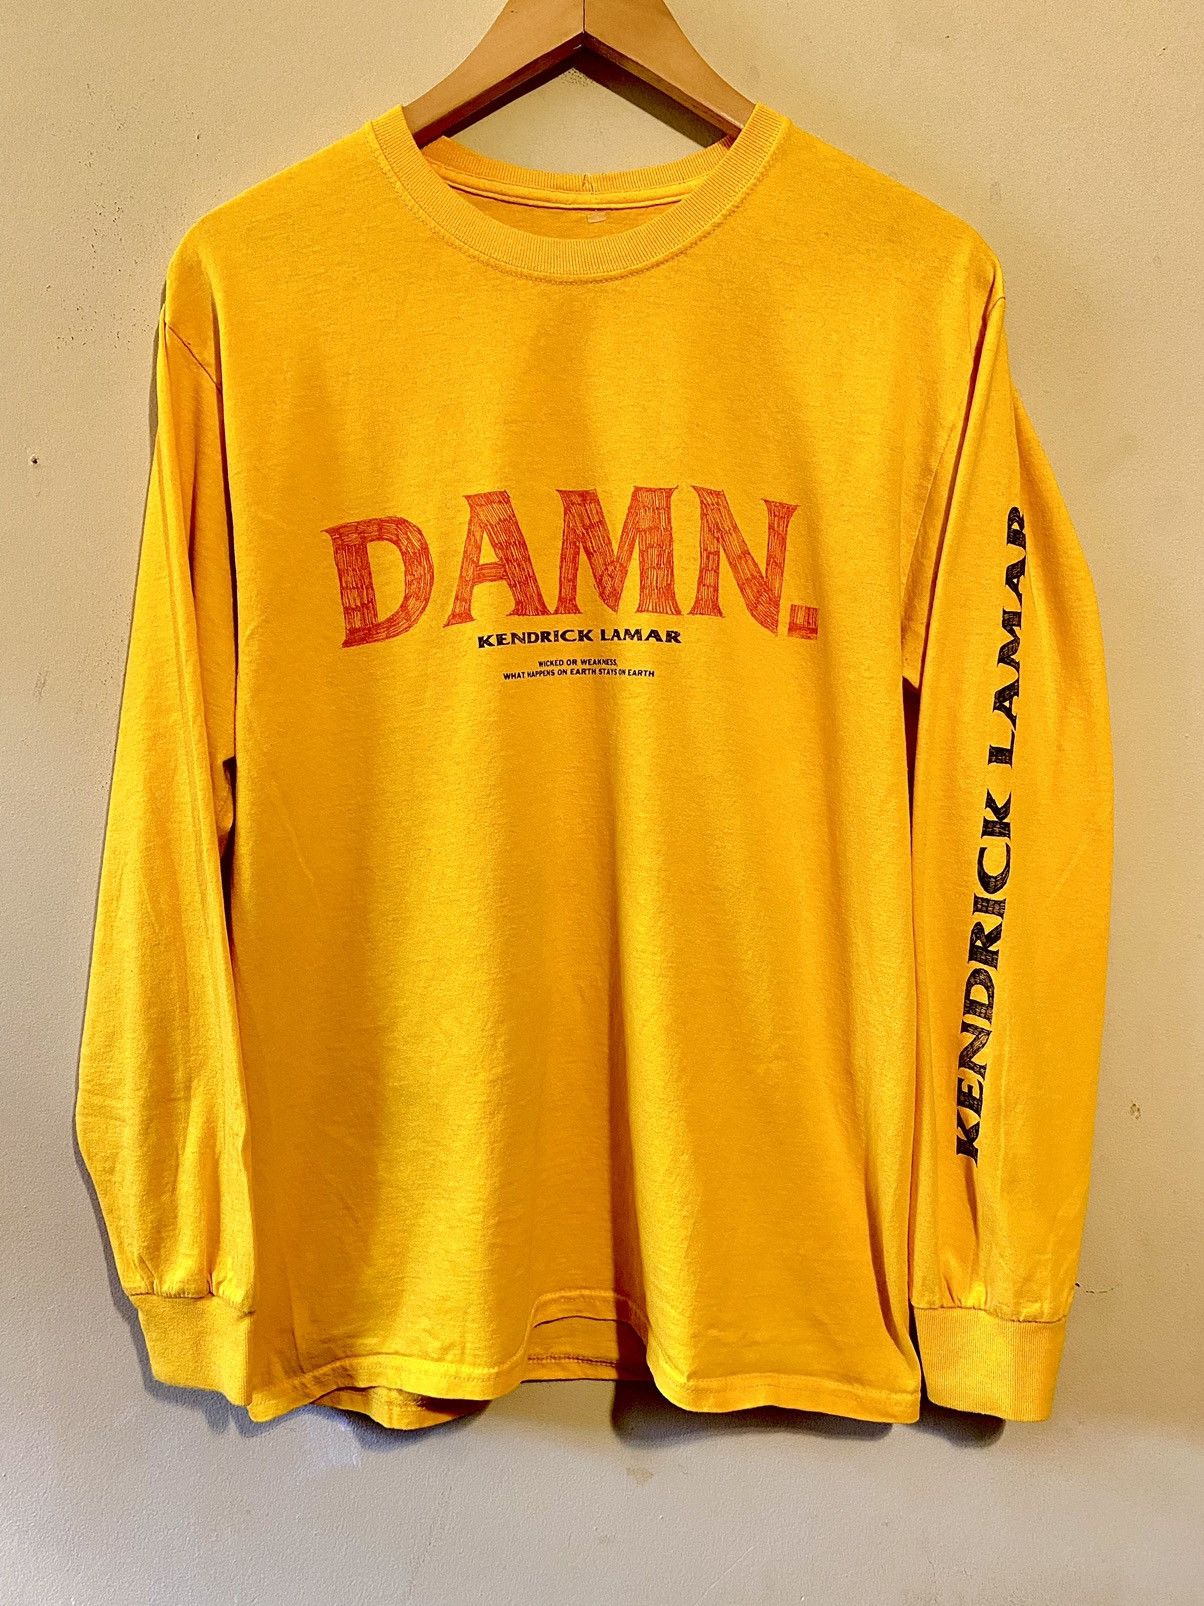 Kendrick Lamar Kendrick Lamar Damn Tour Shirt Size US M / EU 48-50 / 2 - 5 Thumbnail